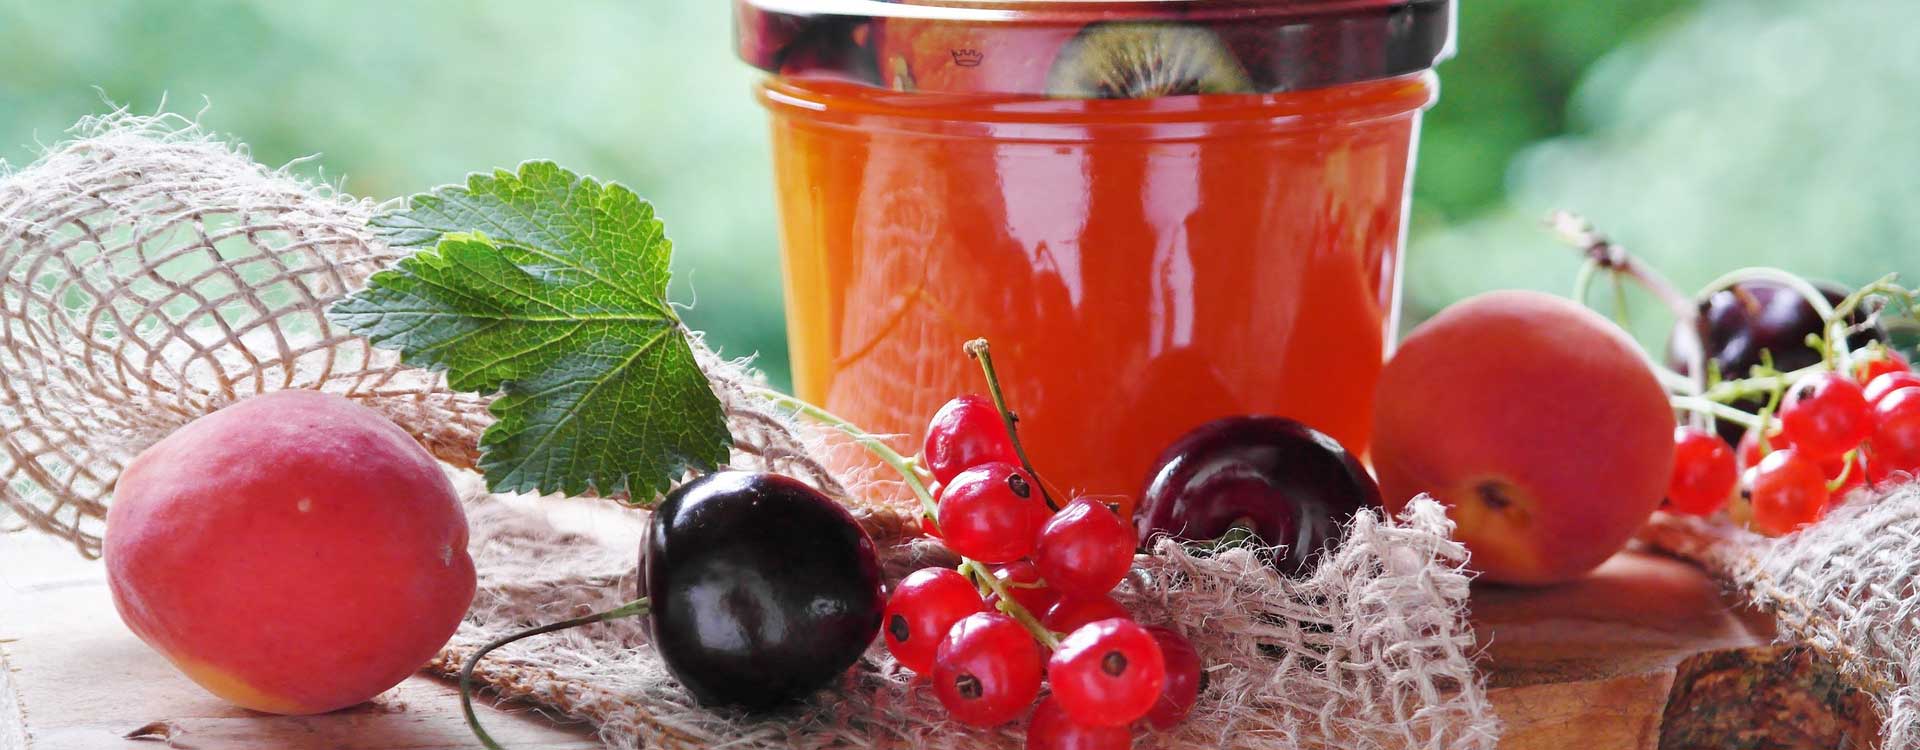 10 Tipps zum Kochen von Marmelade, Konfitüre und Gelee. Konfitüre im Glas und Früchte davor.